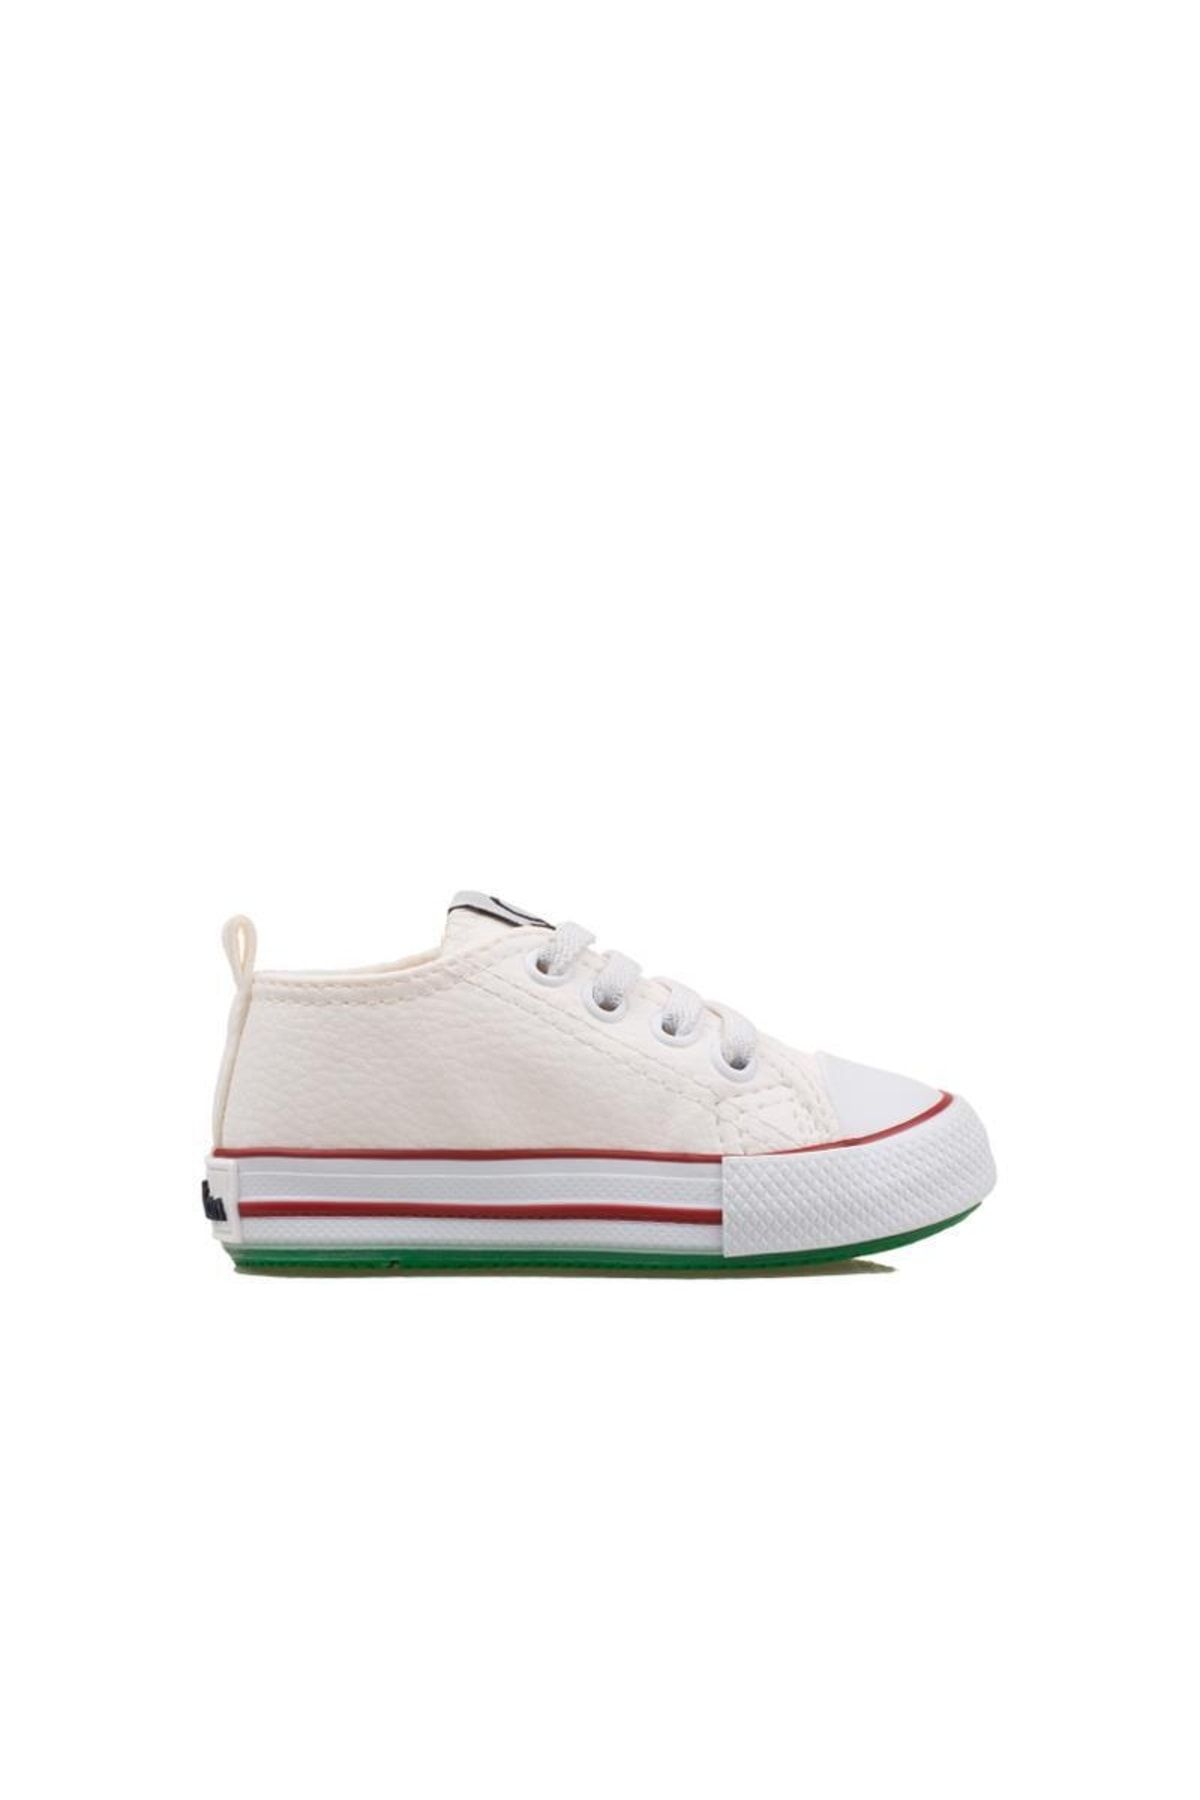 Benetton Beyaz Unisex Bebe Lastikli Sneaker Bn 30806